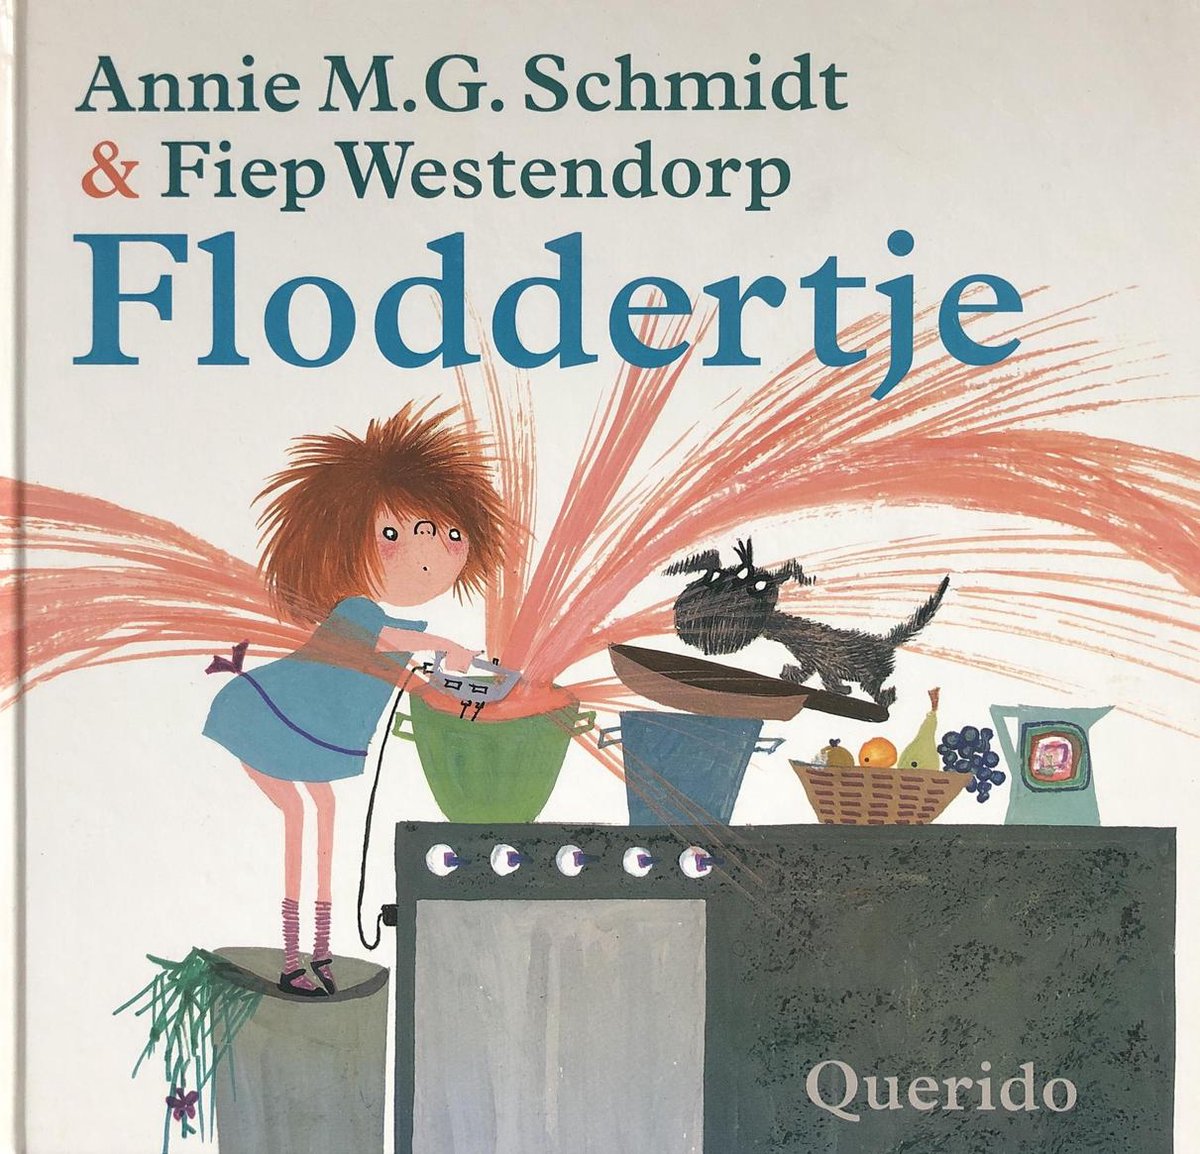 Floddertje - Annie M.G. Schmidt